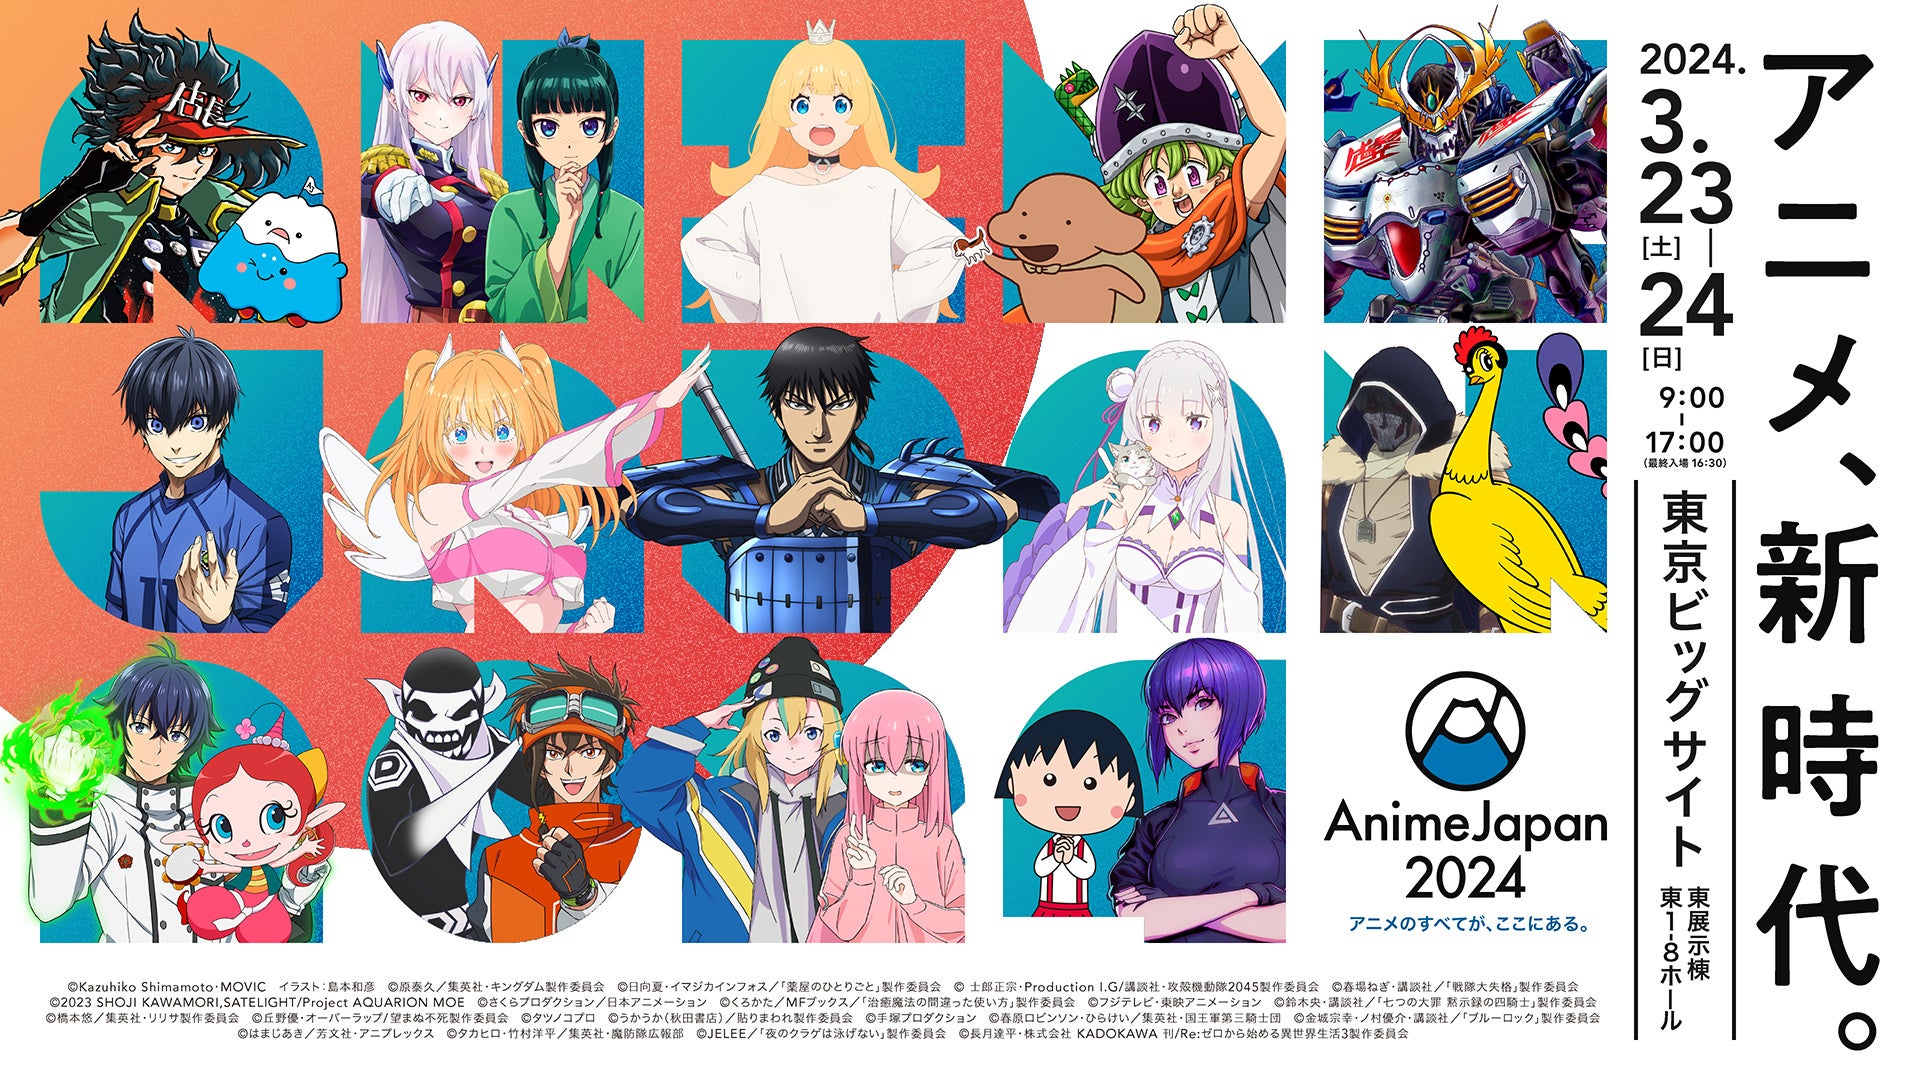 今年のマーベラスブースはステージ！／3月23日(土)～24日(日)東京ビッグサイトにて開催『AnimeJapan2024』